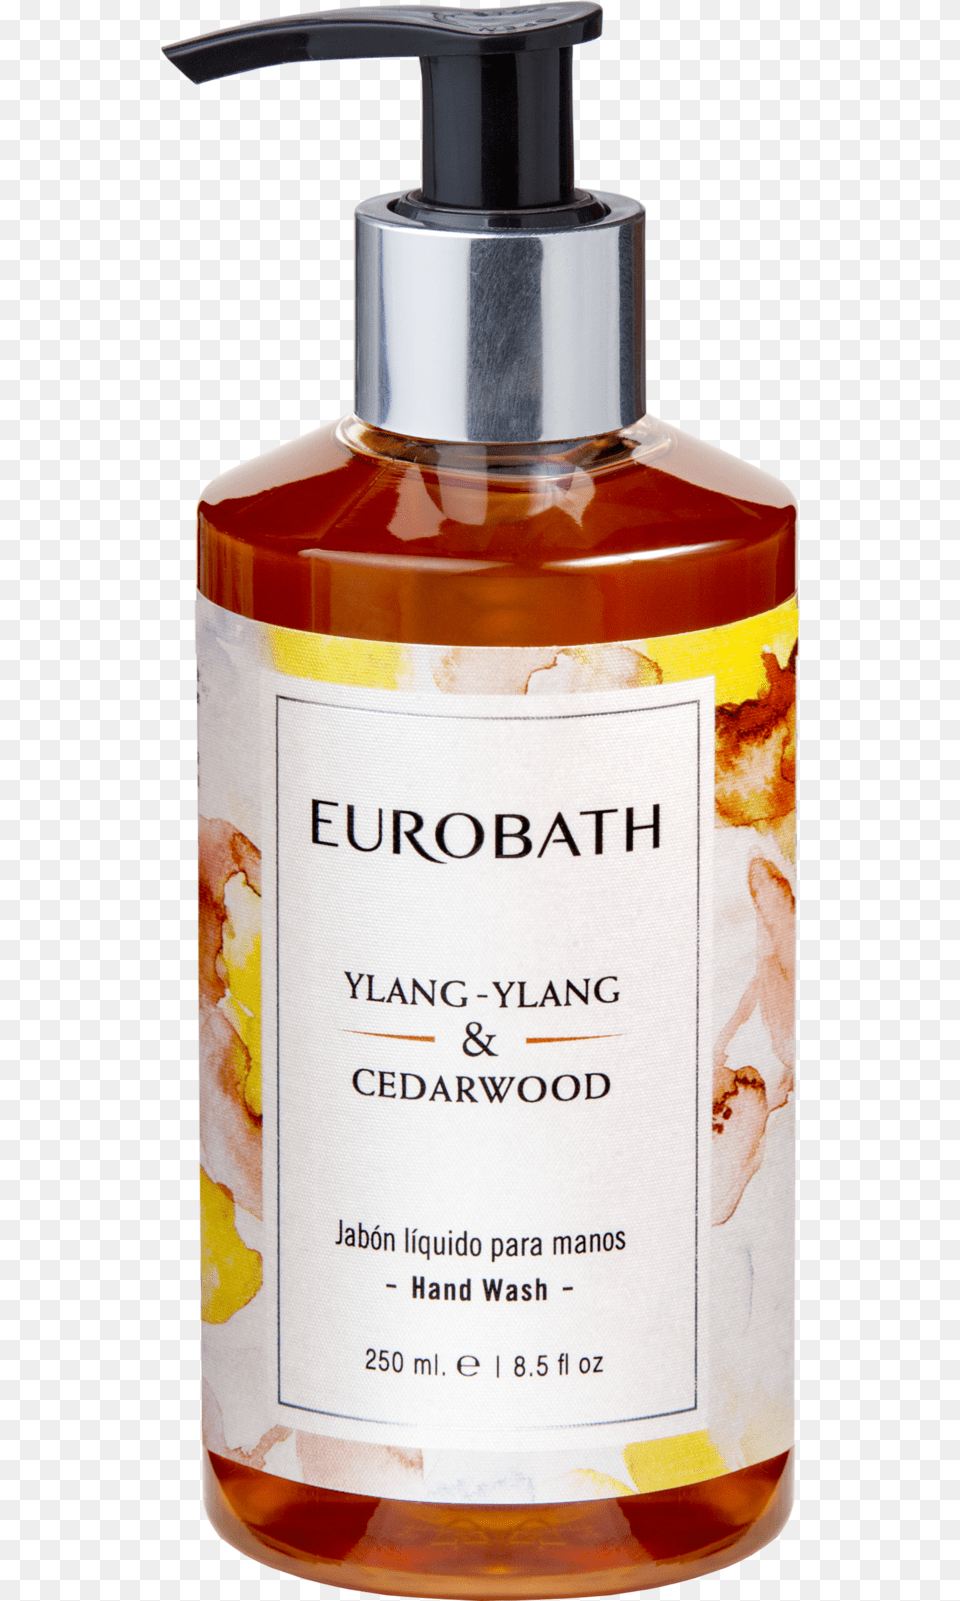 Eurobath Jabon De Manos Ylan Ylan Y Cedarwood X250 Hair Care, Bottle, Cosmetics, Perfume, Lotion Free Transparent Png